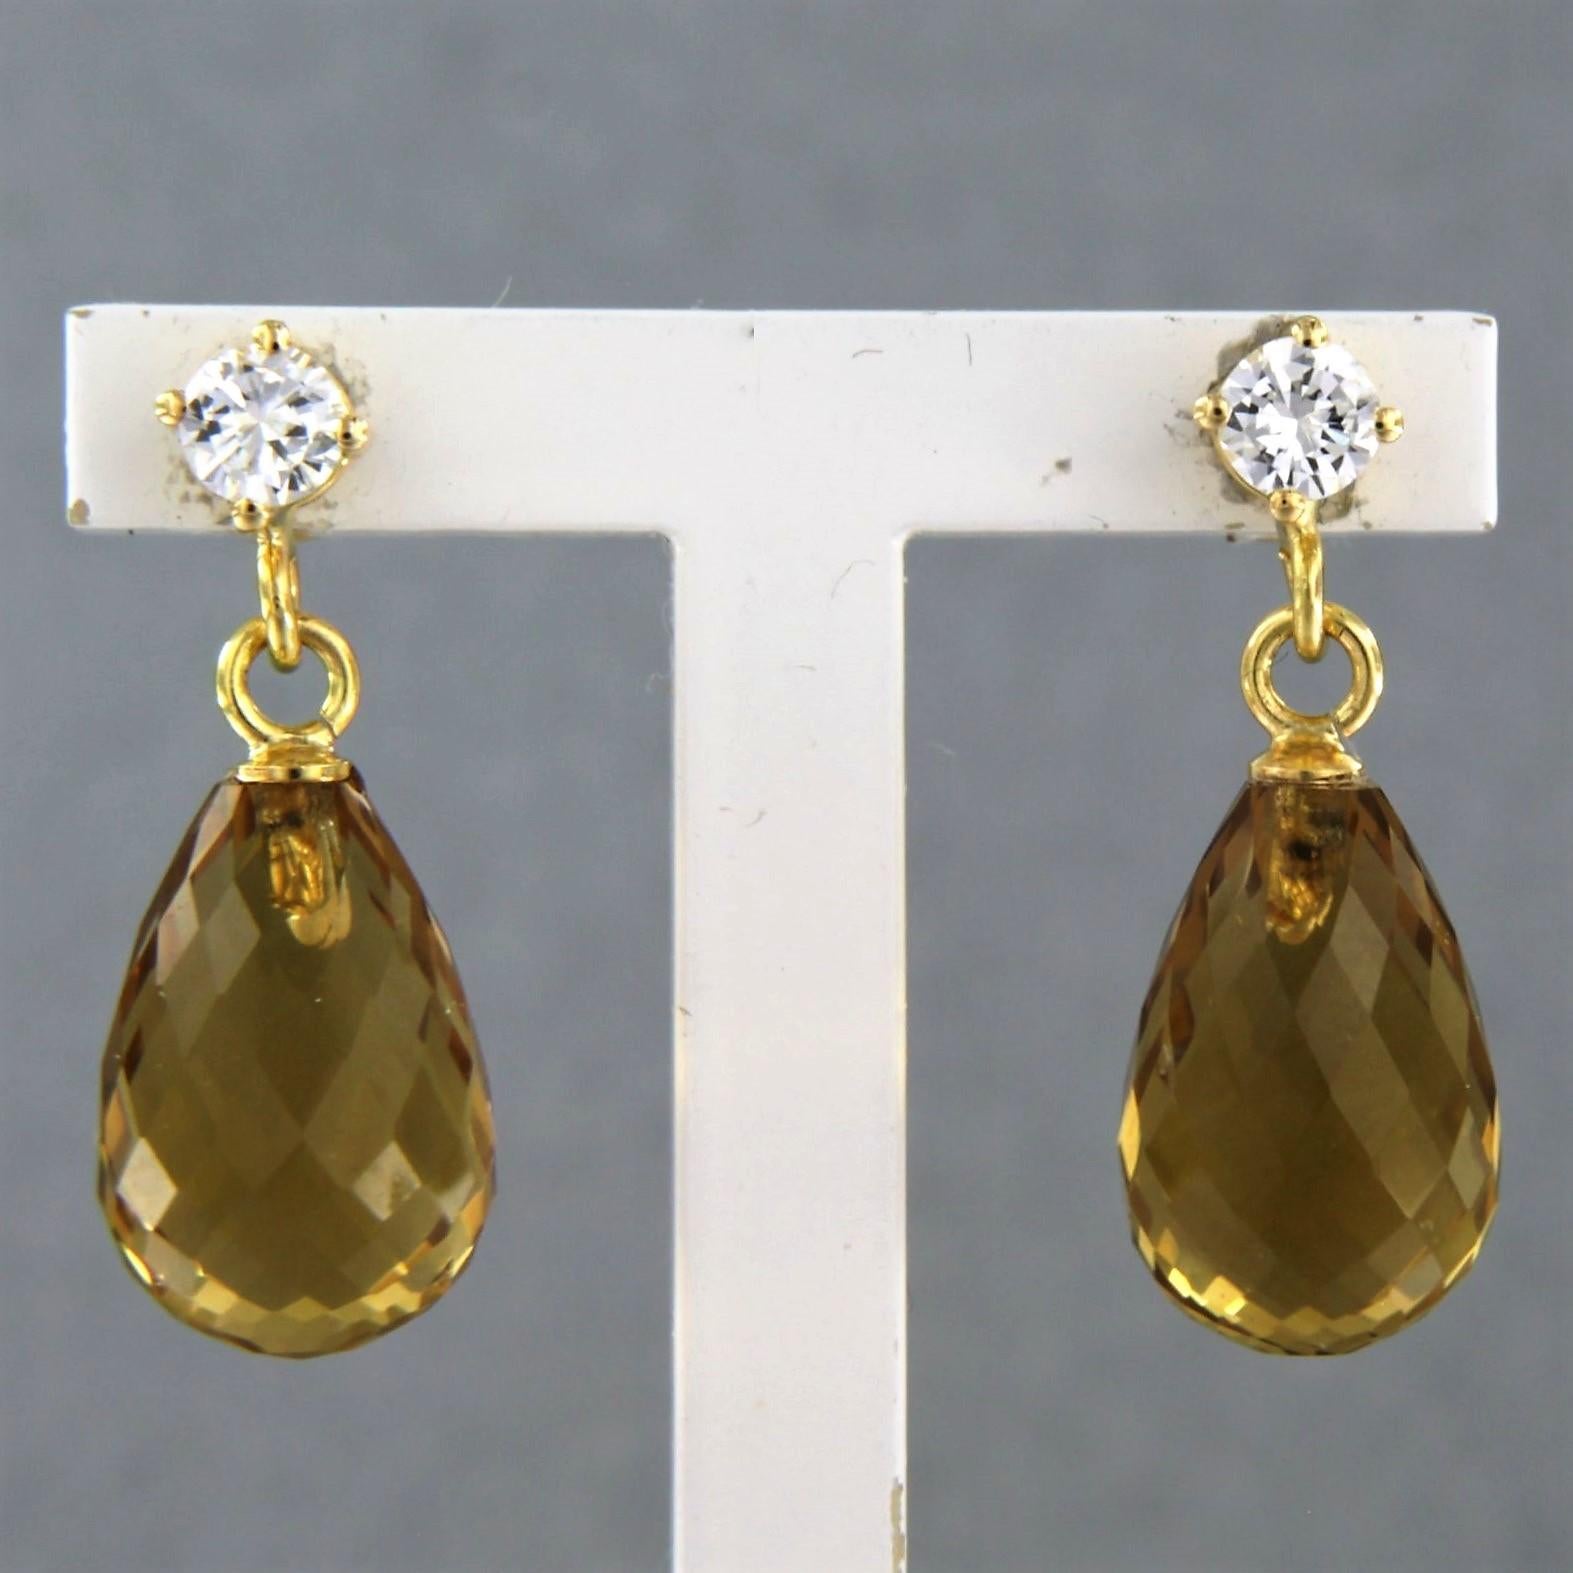 Ohrringe aus 18k Gelbgold mit gelbem Citrin und Diamanten im Brillantschliff 0,30ct - F/G - VS/SI

detaillierte Beschreibung:

die Größe der Ohrringe ist 2,2 cm hoch und 0,8 cm breit

Gesamtgewicht 3.9 Gramm

gesetzt mit

- 2 x 12 mm x 8 mm gelber